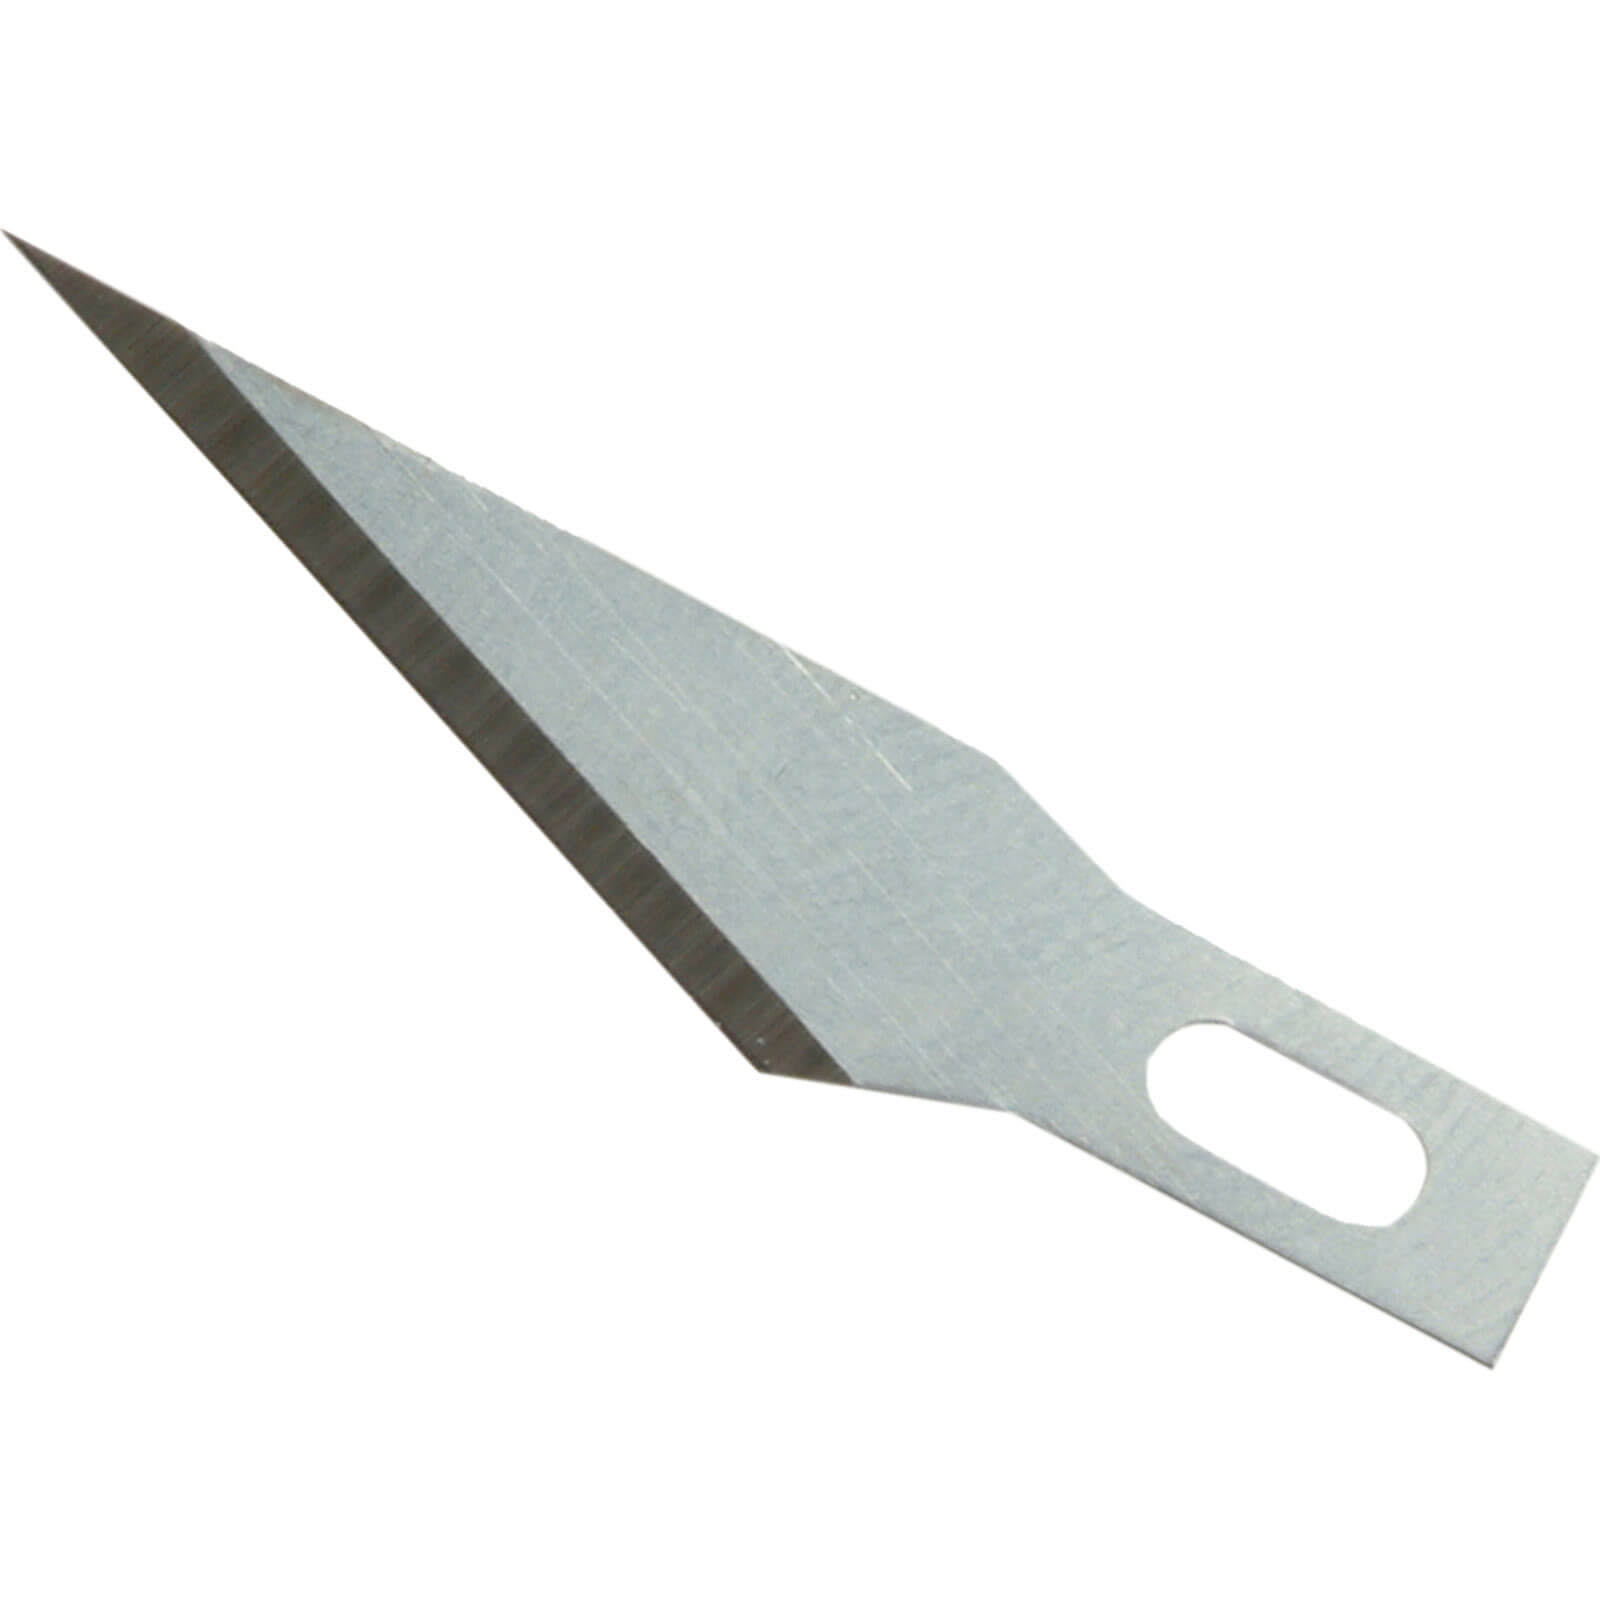 Xcelite XNB103 Hobby Knife Blade - Fine Point